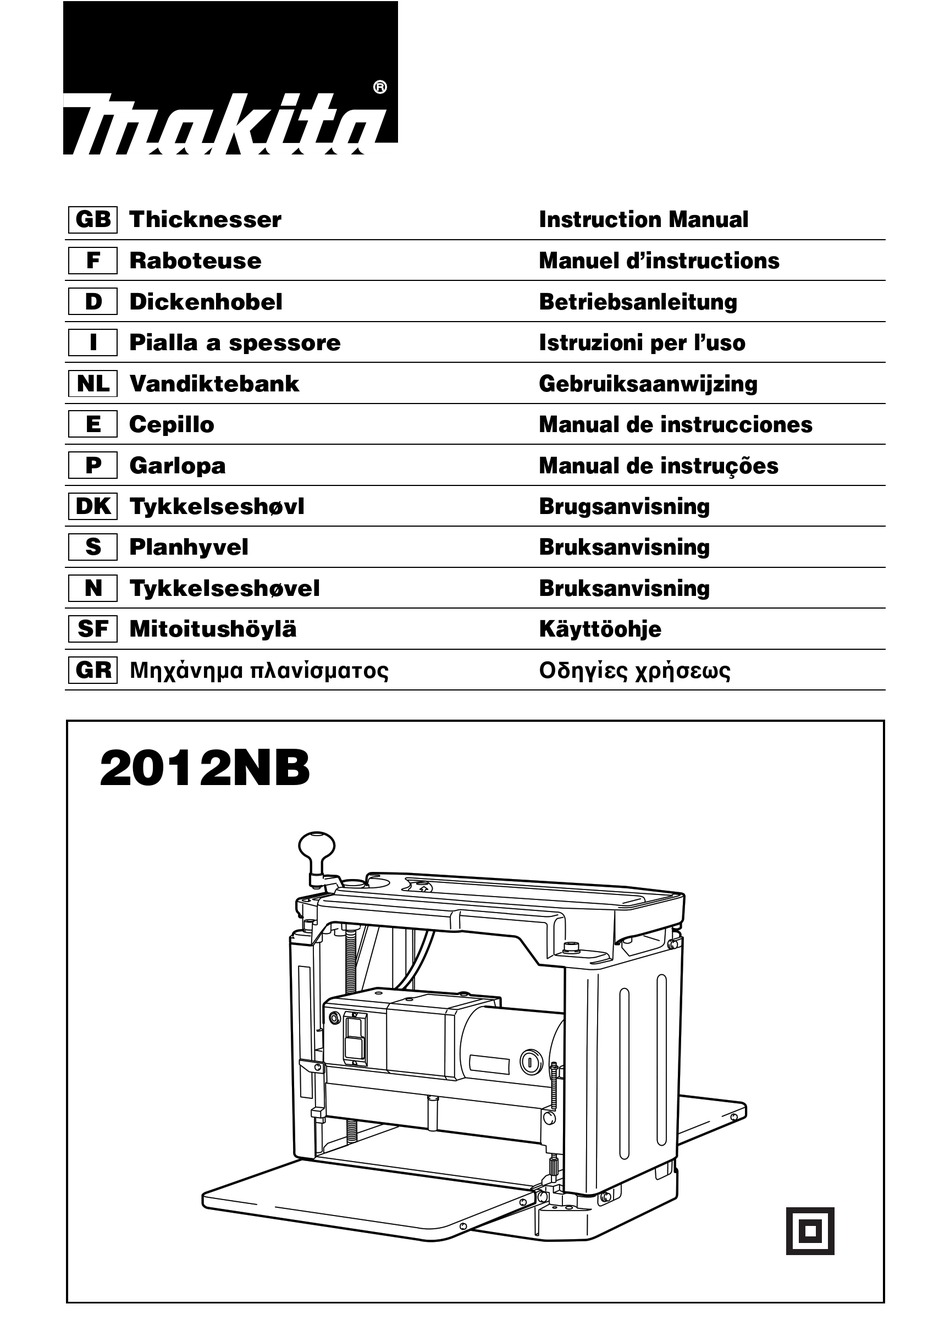 Rejse tiltale Grine præcedens Installation; Functional Description - Makita 2012NB Instruction Manual  [Page 7] | ManualsLib